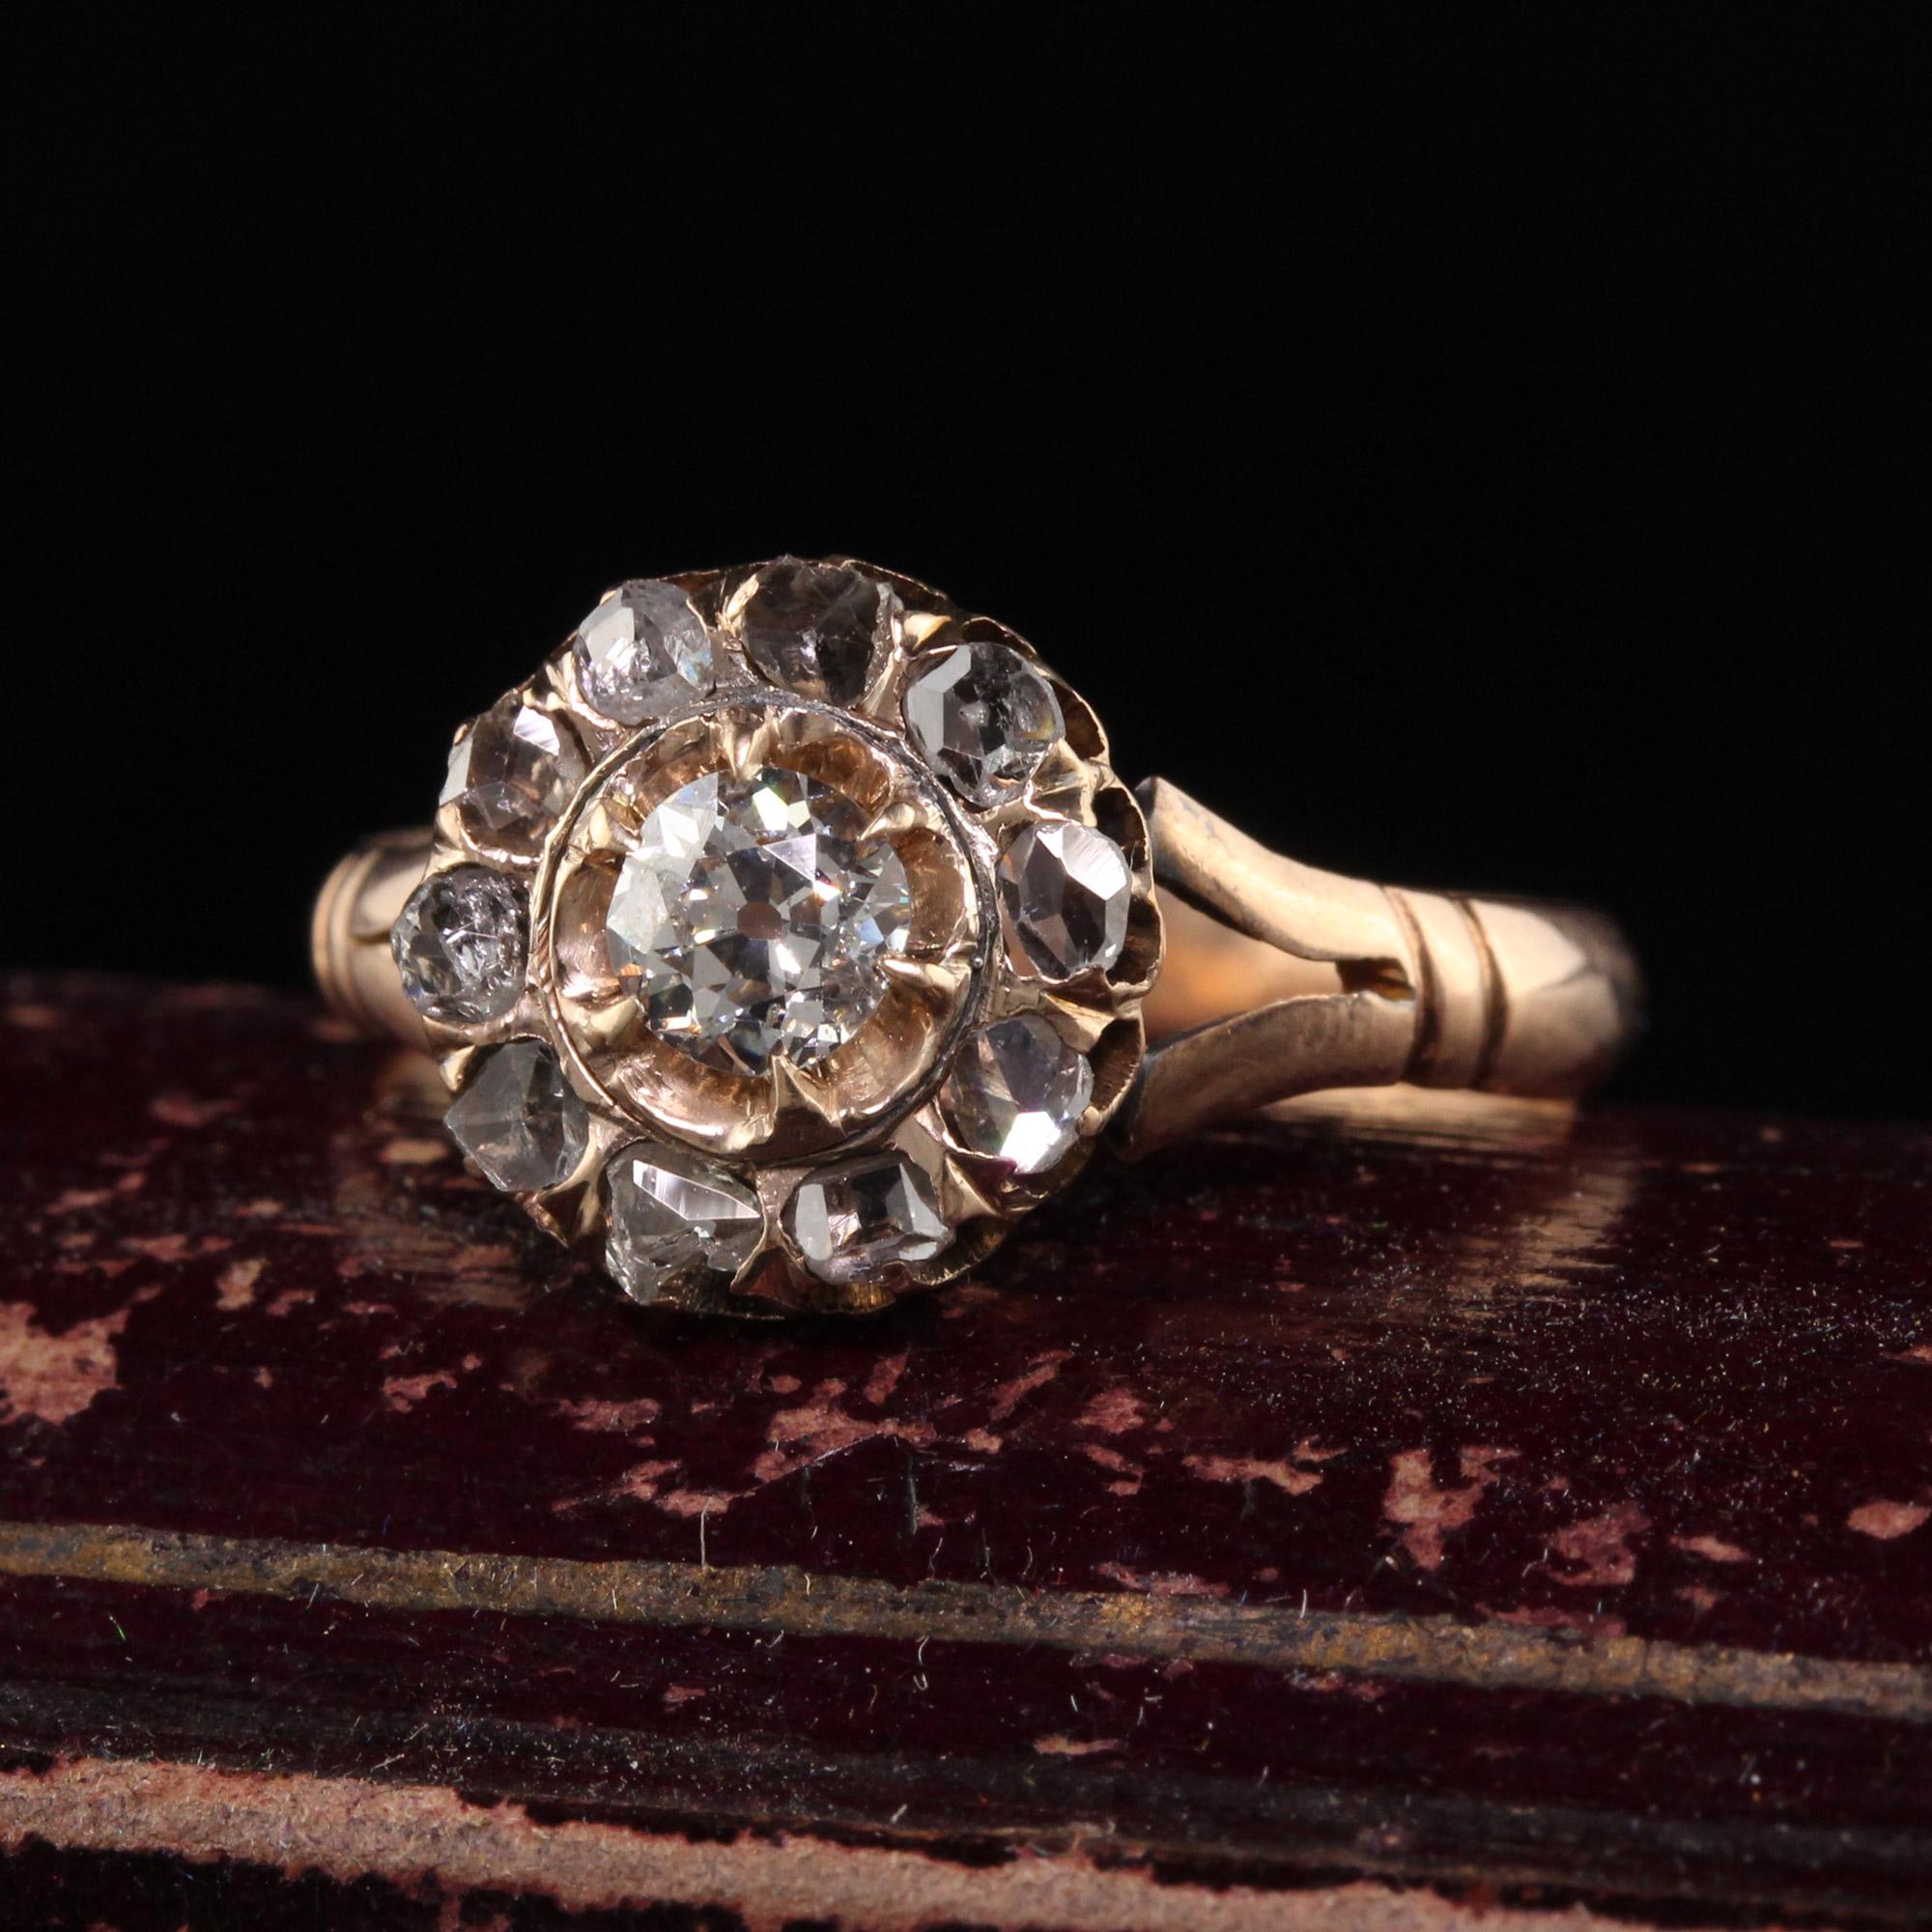 Schöne antike viktorianische 14K Gelbgold Old Mine und Rose Cut Diamond Engagement Ring. Dieser wunderschöne Verlobungsring ist aus 14 Karat Gelbgold gefertigt. In der Mitte befindet sich ein Diamant im alten Minenschliff, der von Diamanten im